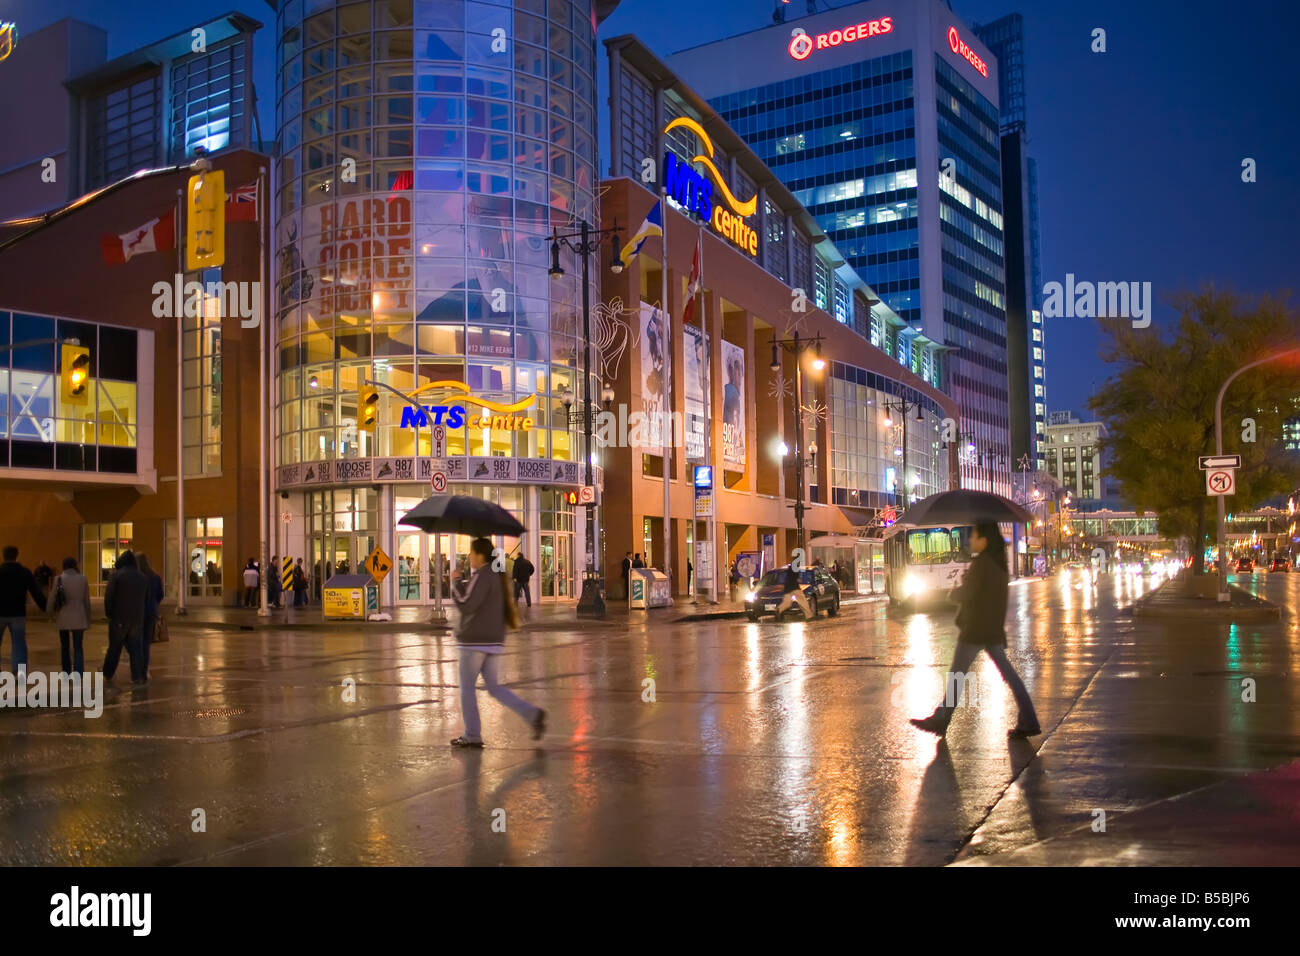 Pedoni che attraversano una strada di città in una piovosa notte, portando gli ombrelli, Portage Avenue, Winnipeg, Manitoba, Canada. Foto Stock